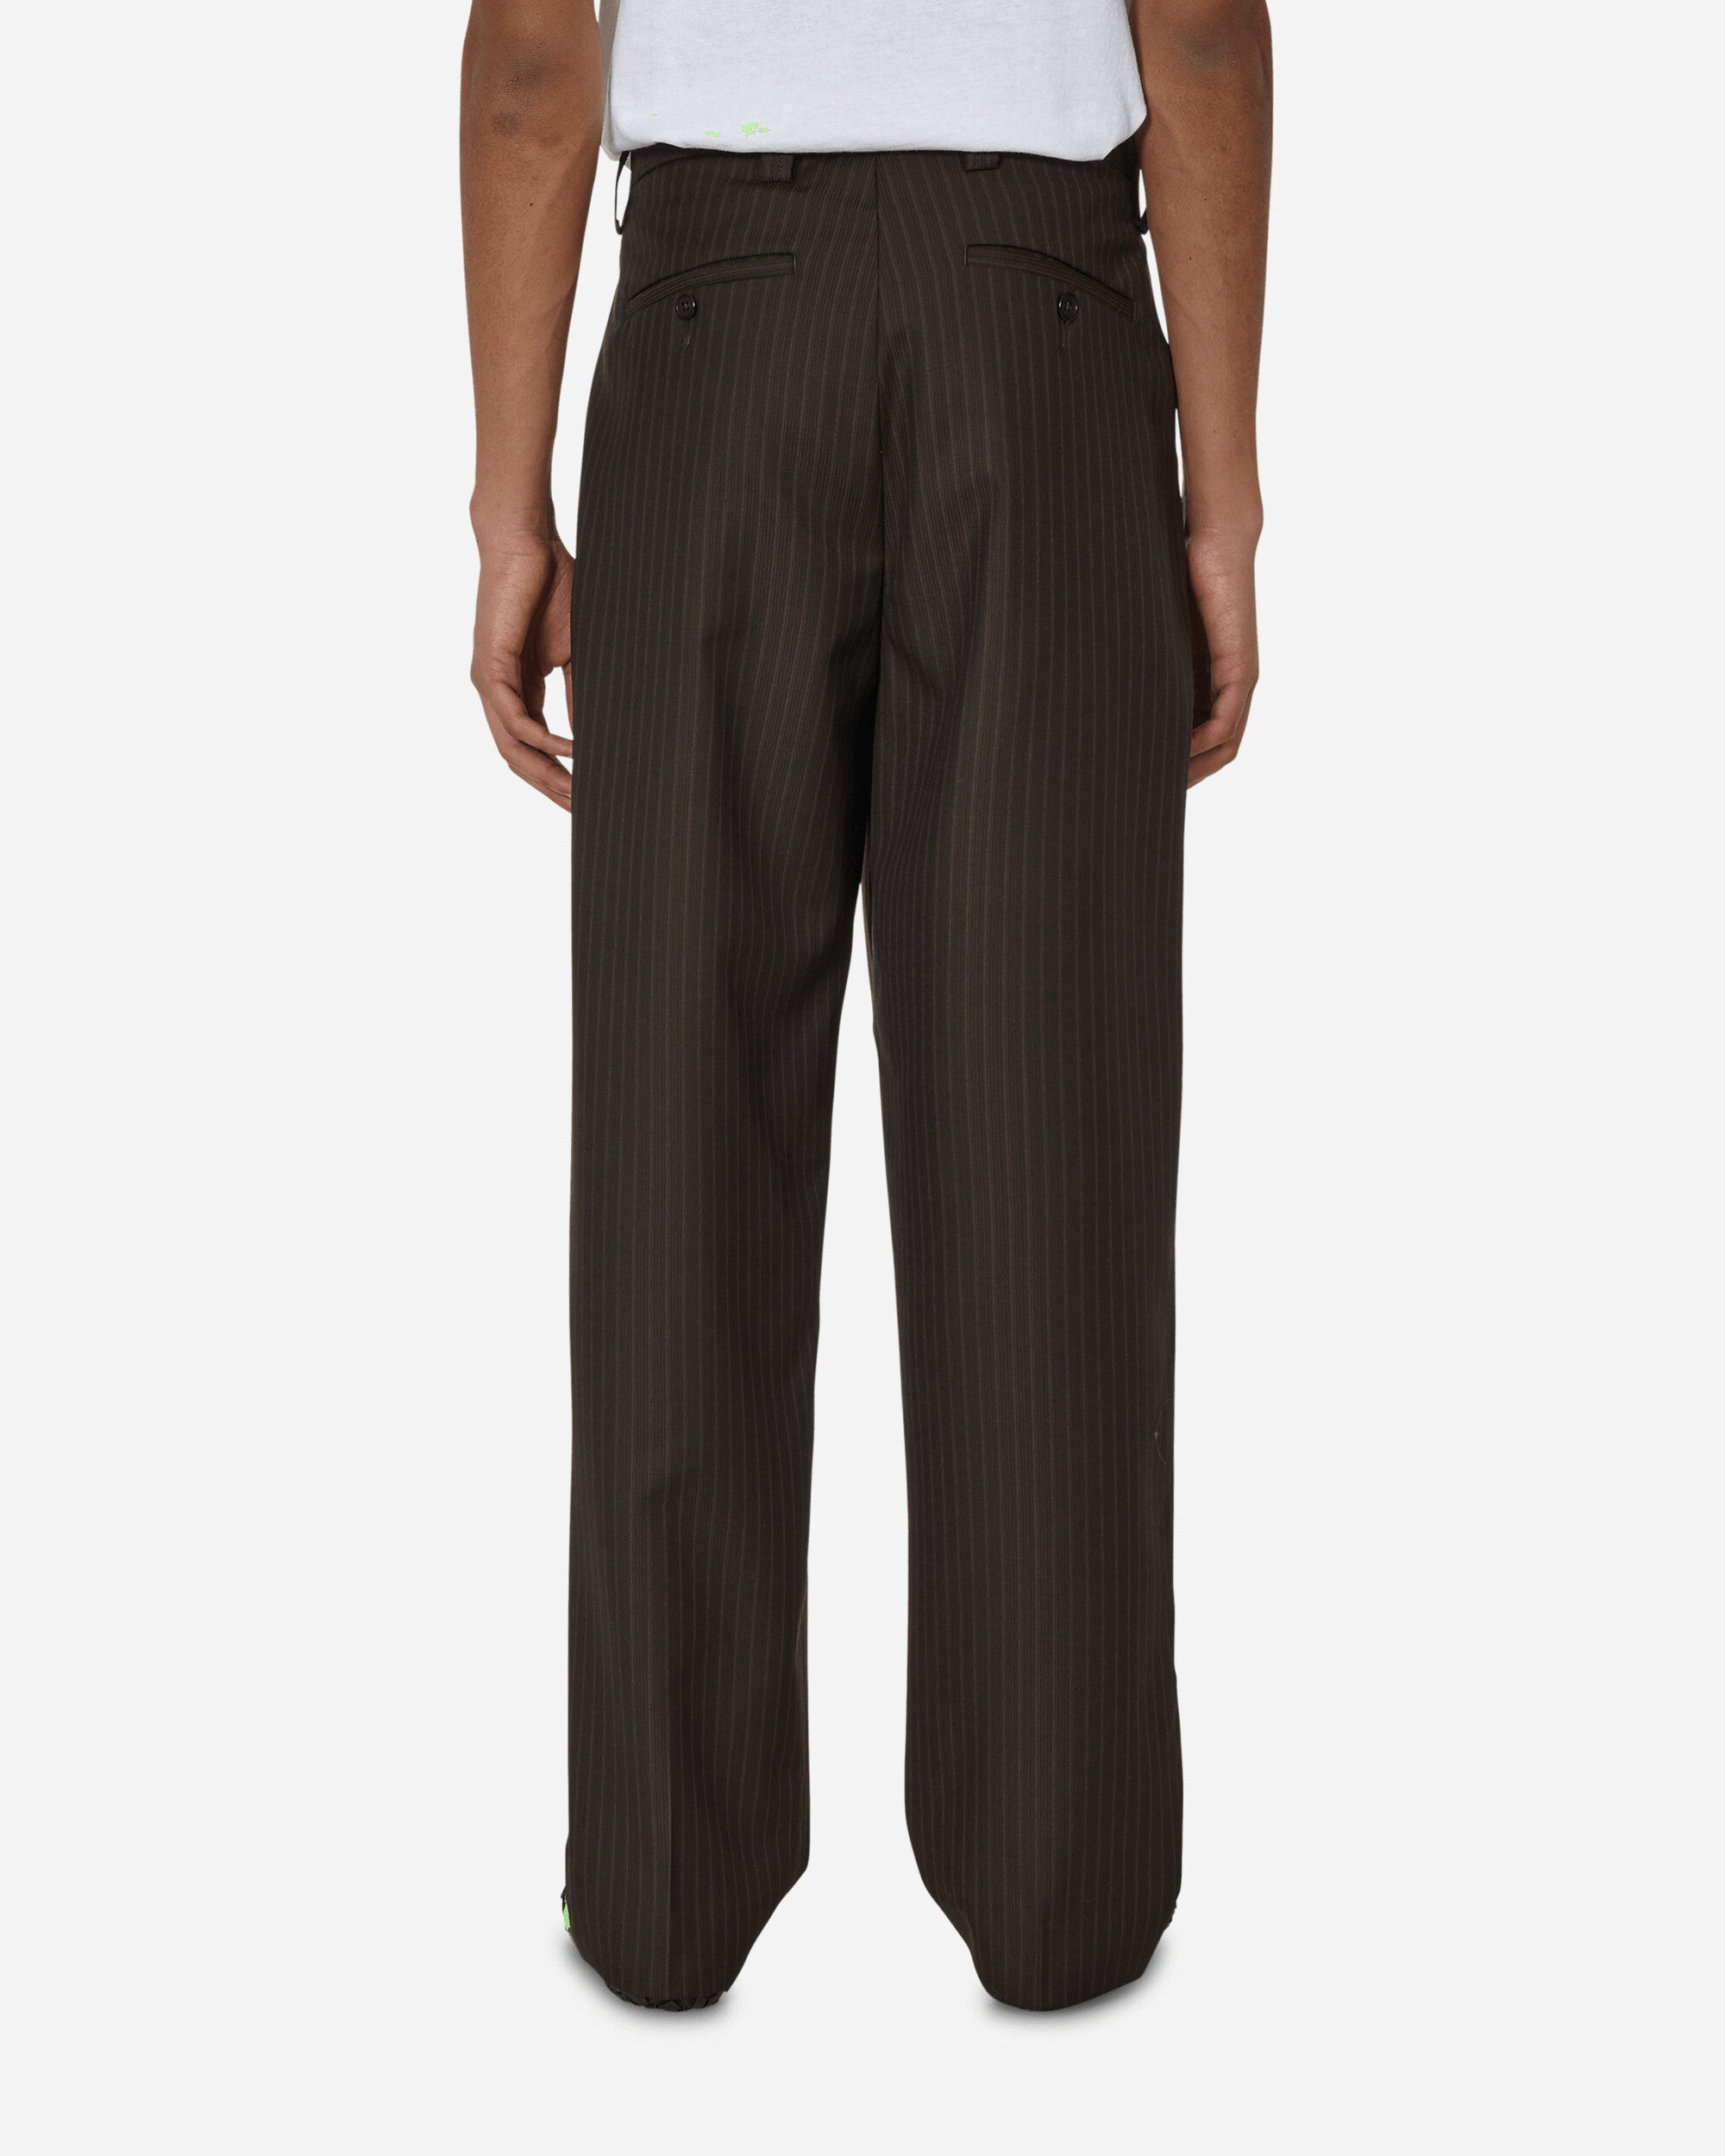 mfpen Scene Trousers Brown Stripe Pants Casual M124-57  1